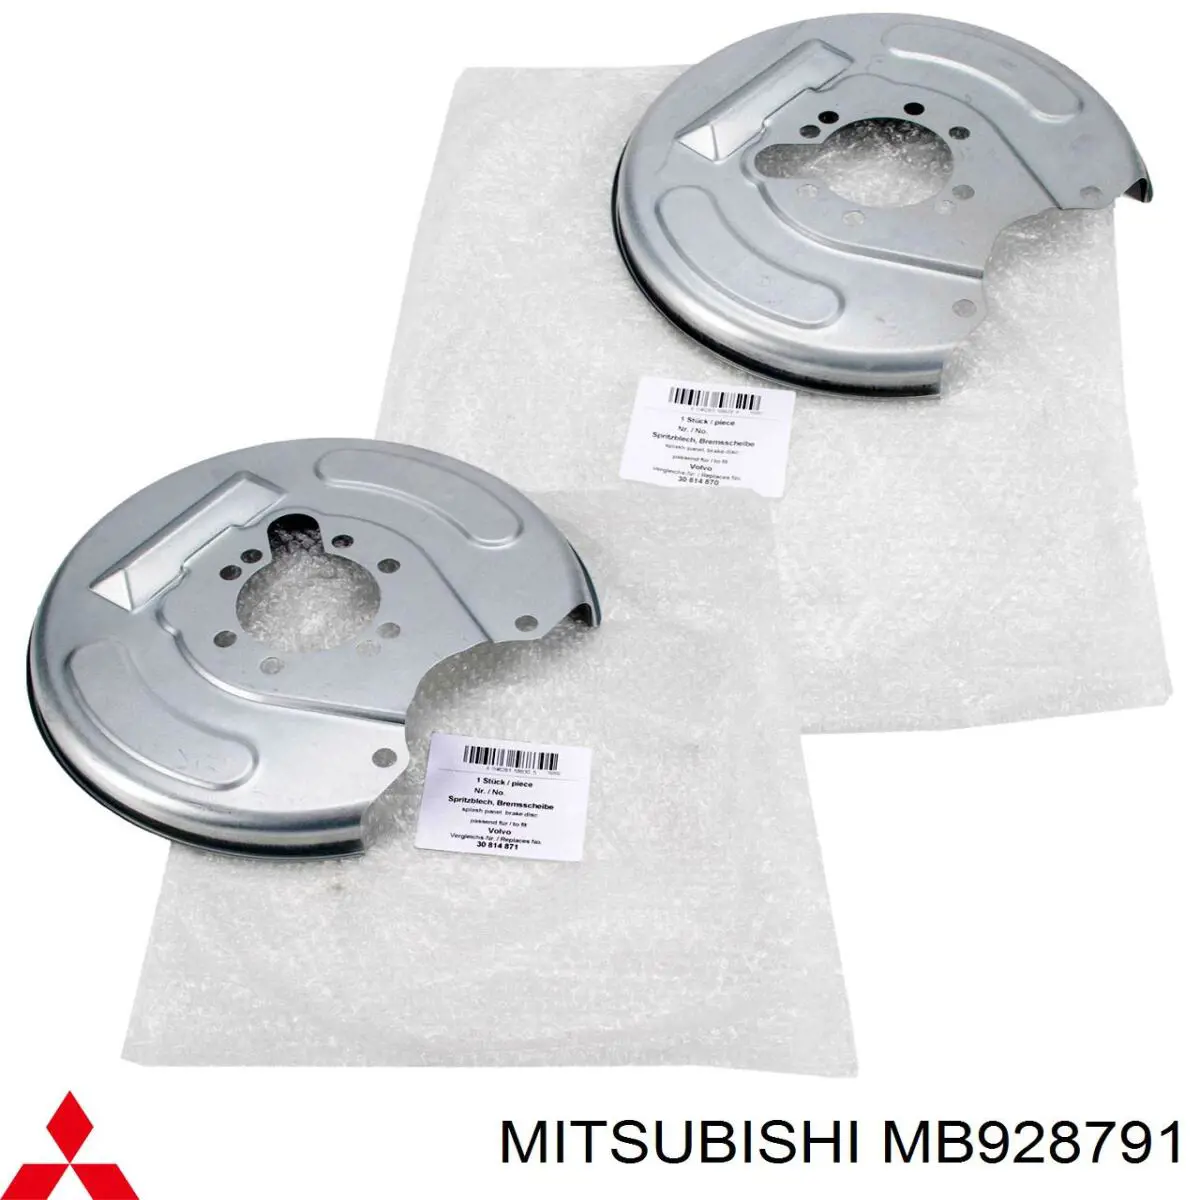 MB928791 Mitsubishi chapa protectora contra salpicaduras, disco de freno trasero derecho